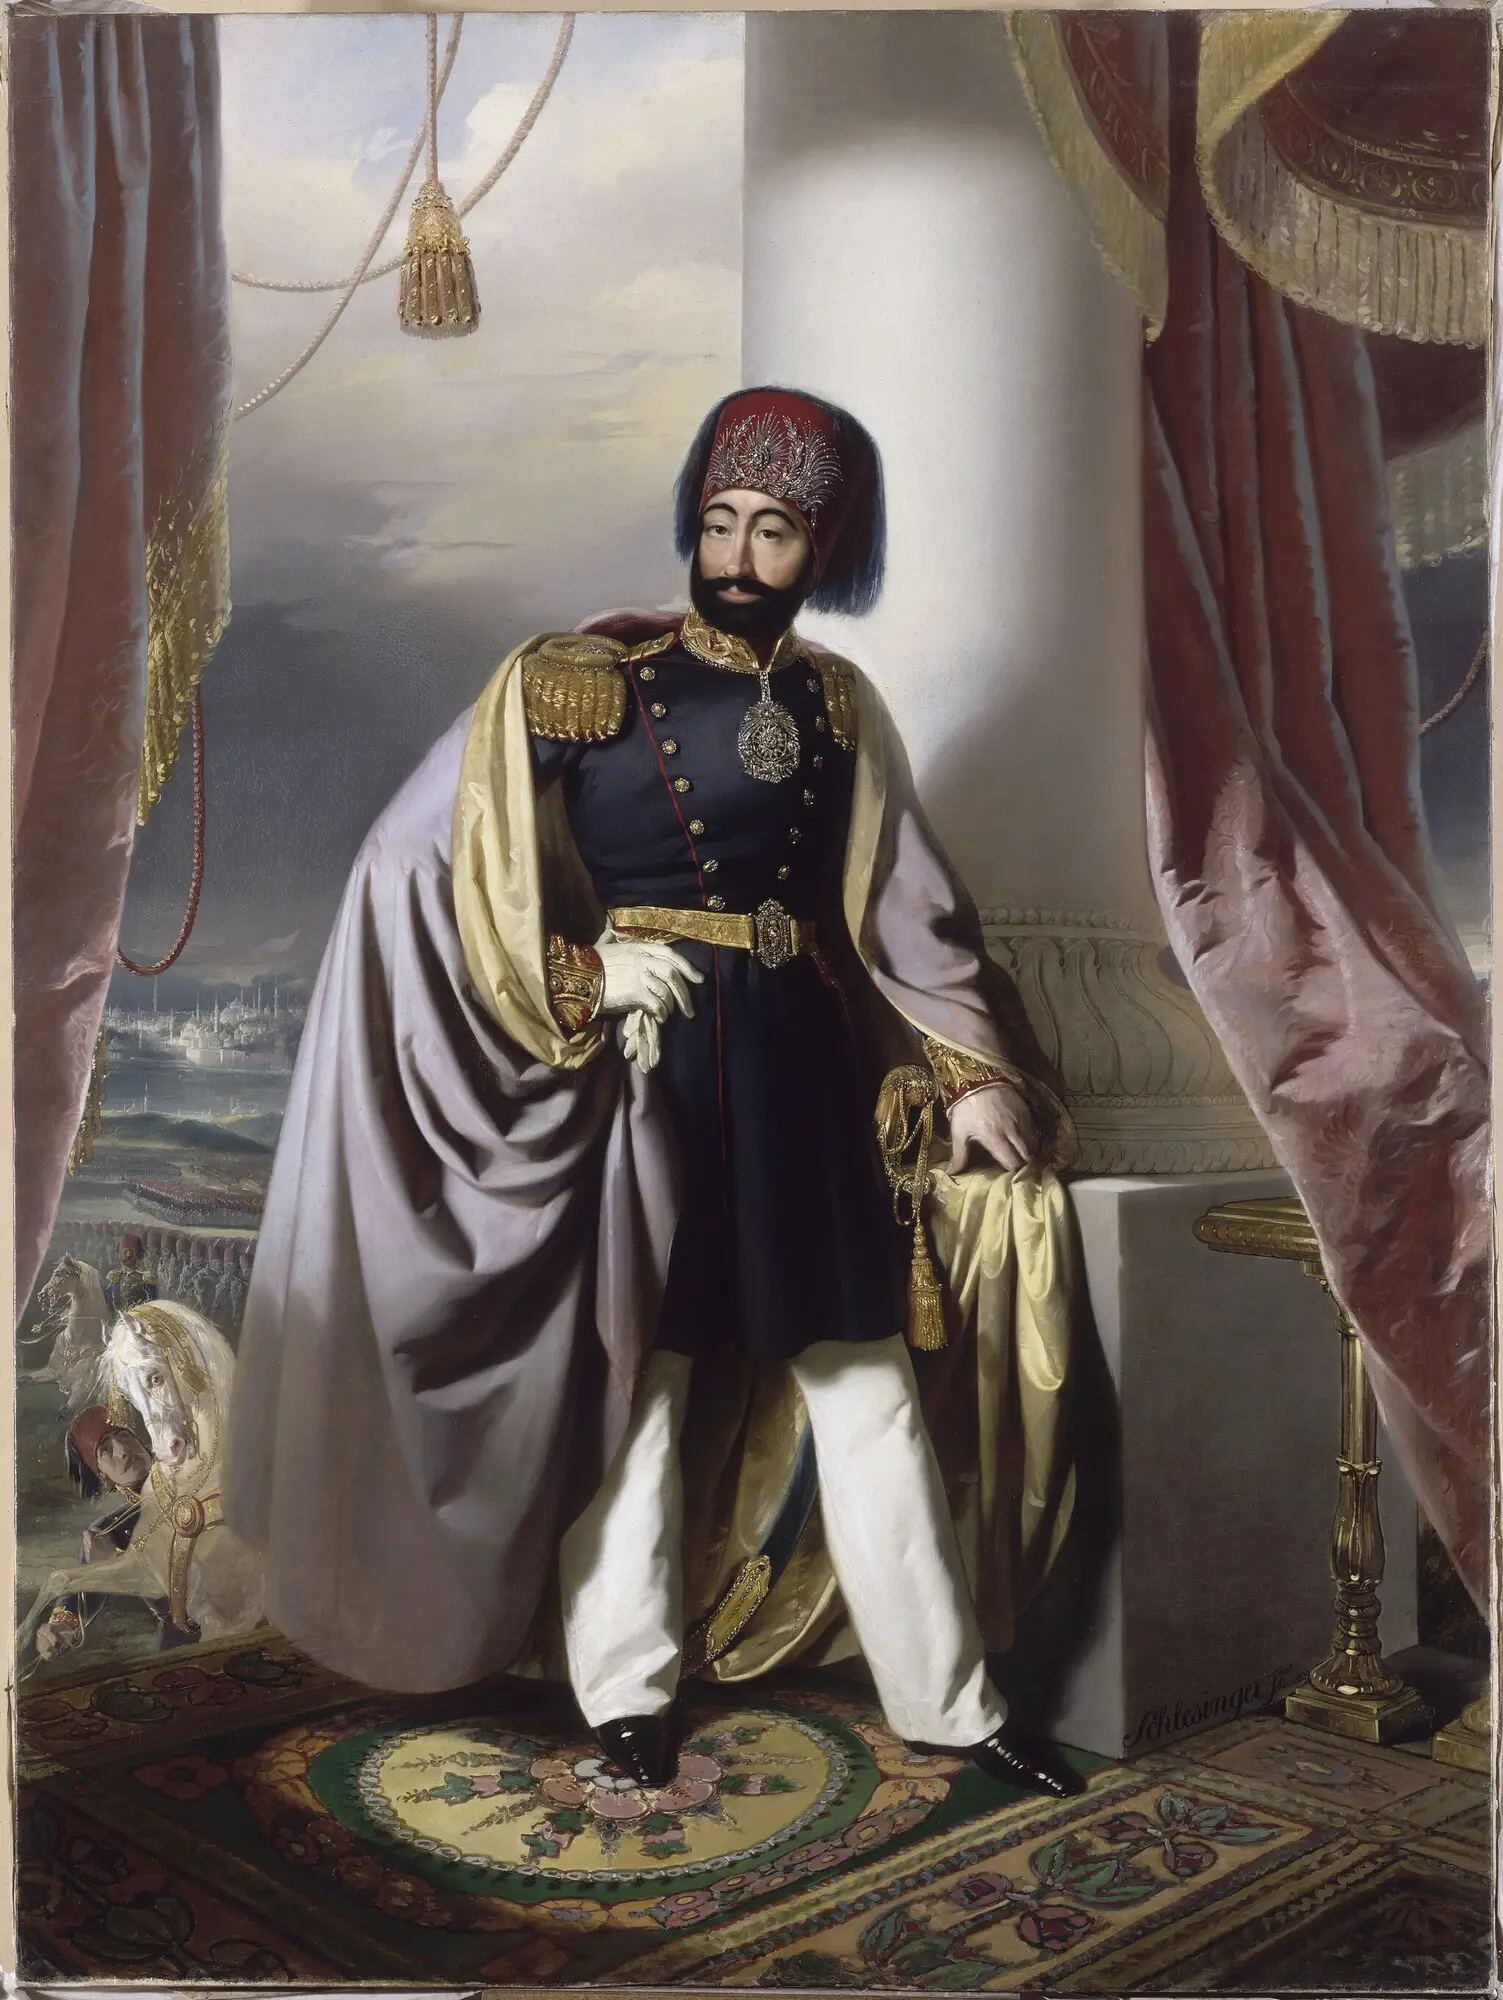 Jenízaros, el cuerpo de élite del ejército otomano: guerreros que causaban estragos allá donde pasaban